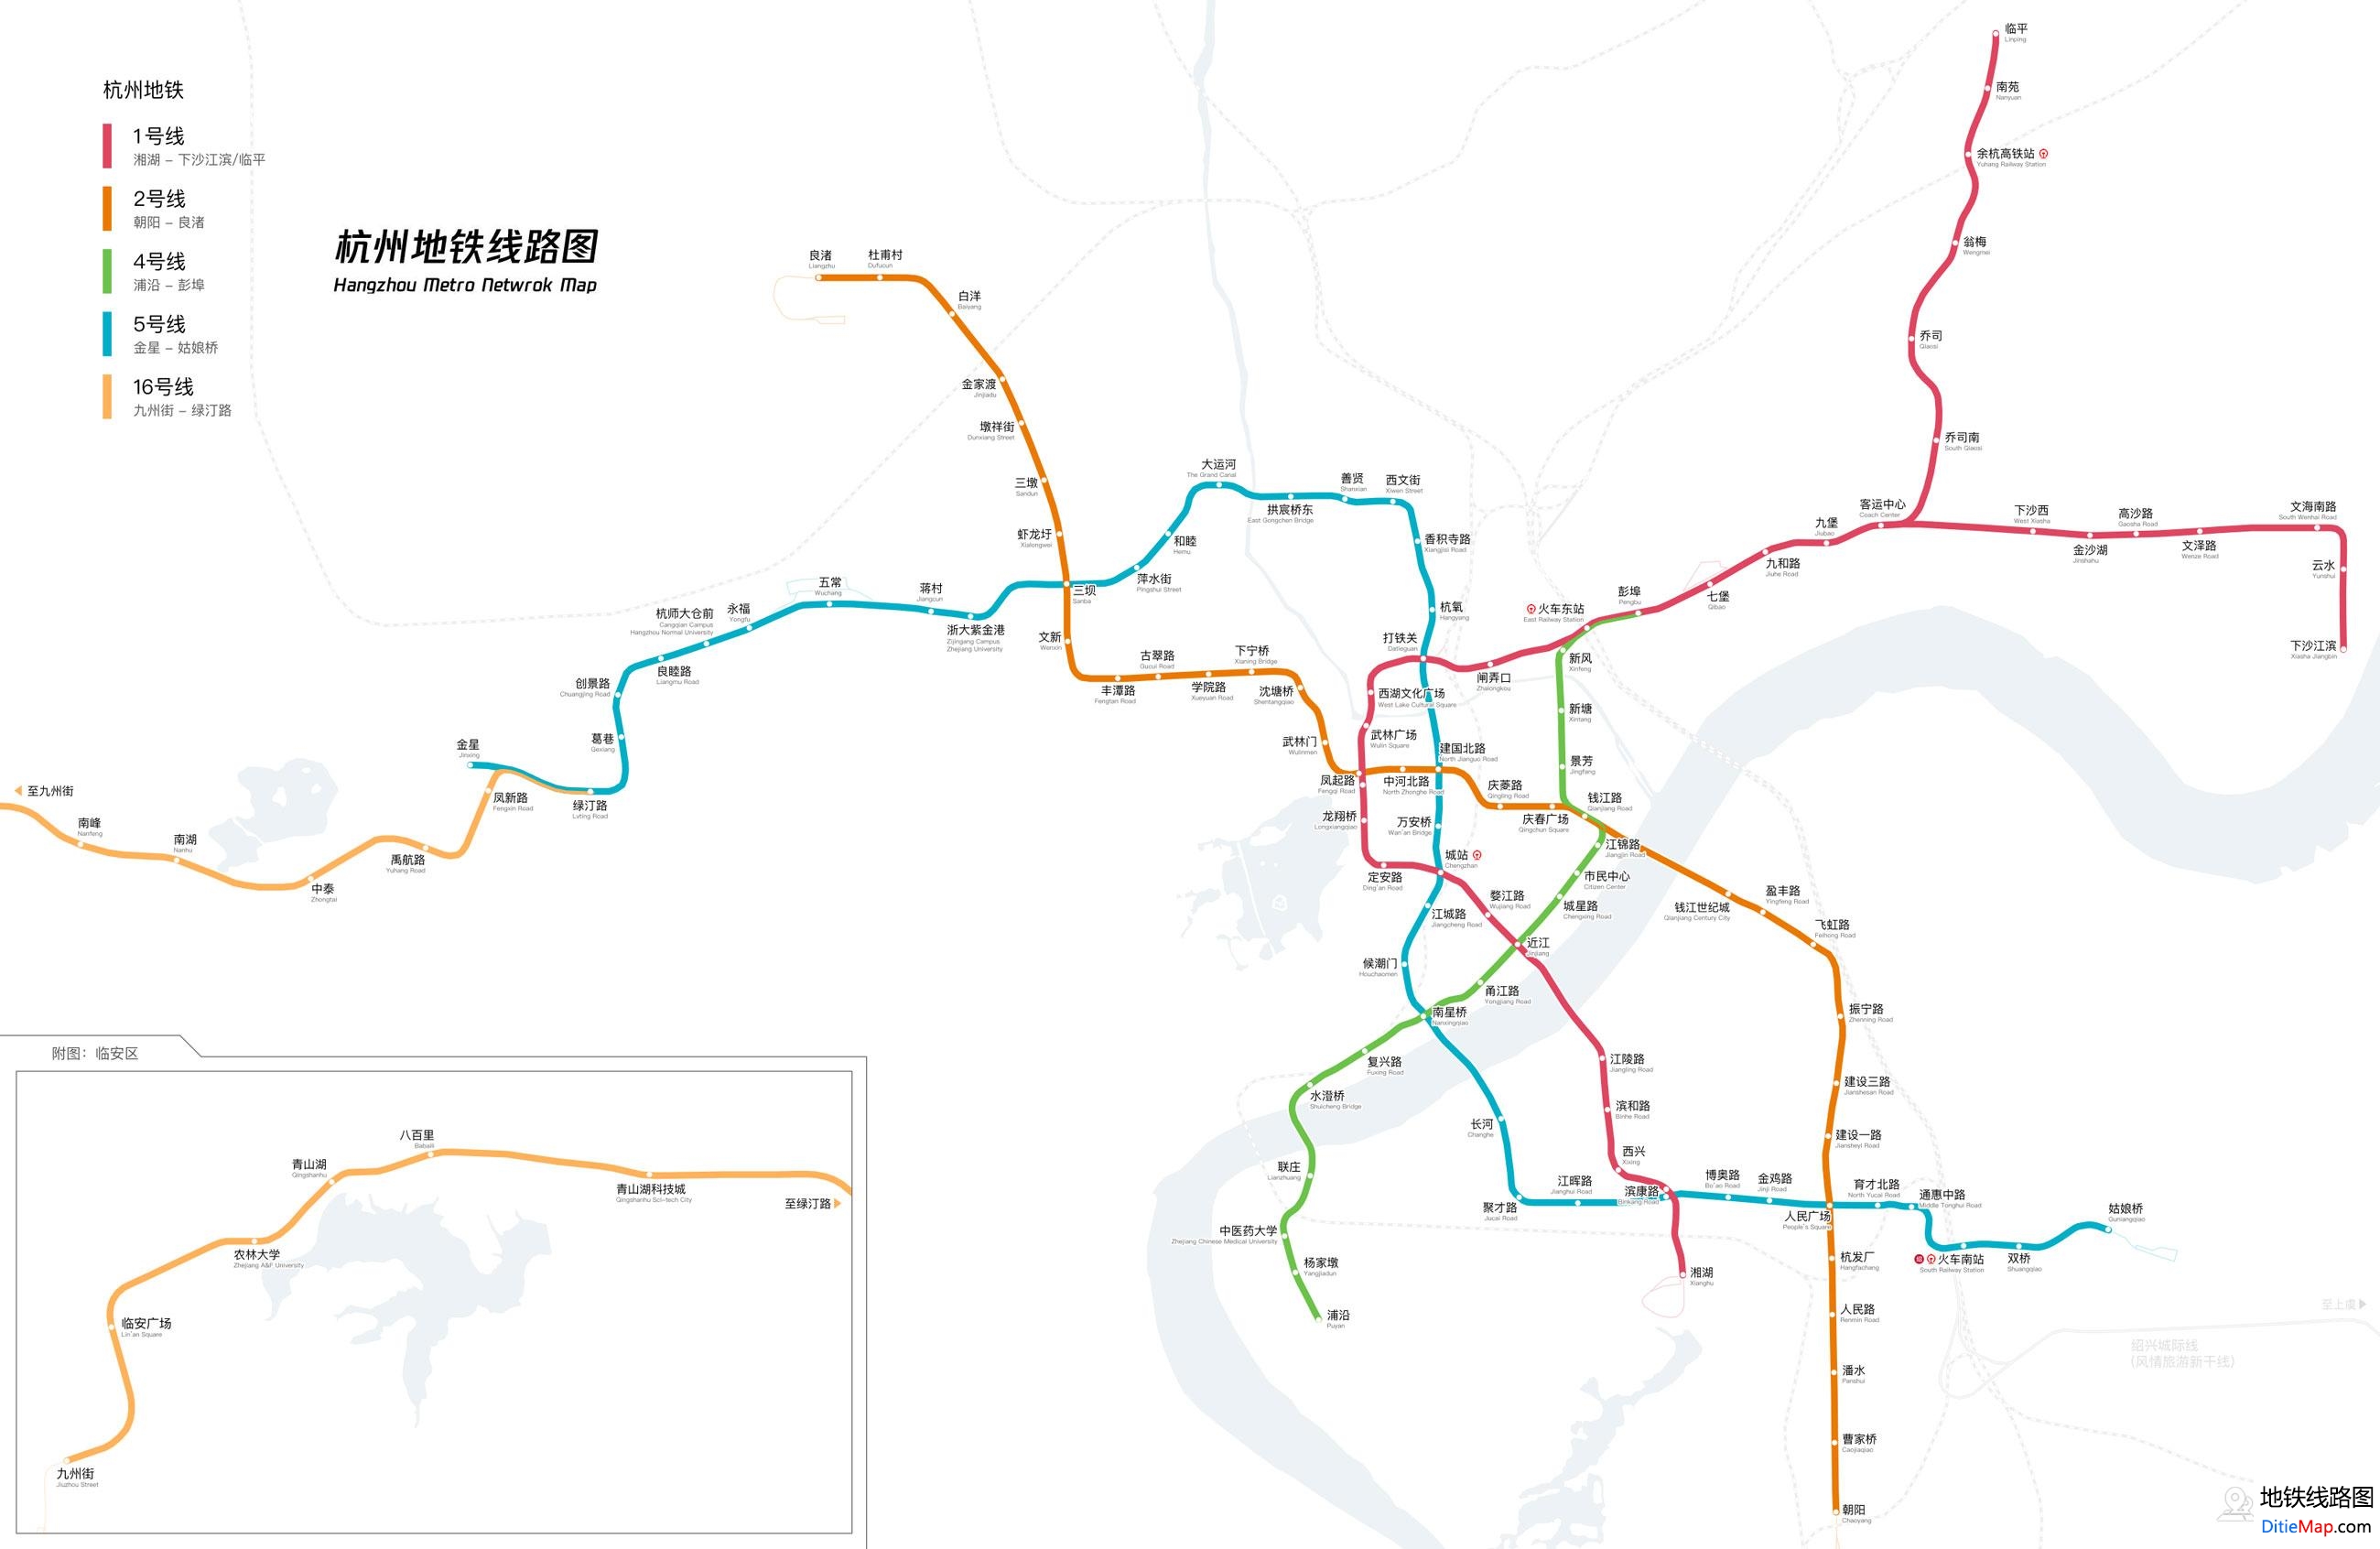 杭州地铁线路图 运营时间票价站点 查询下载 杭州地铁线路图 杭州地铁